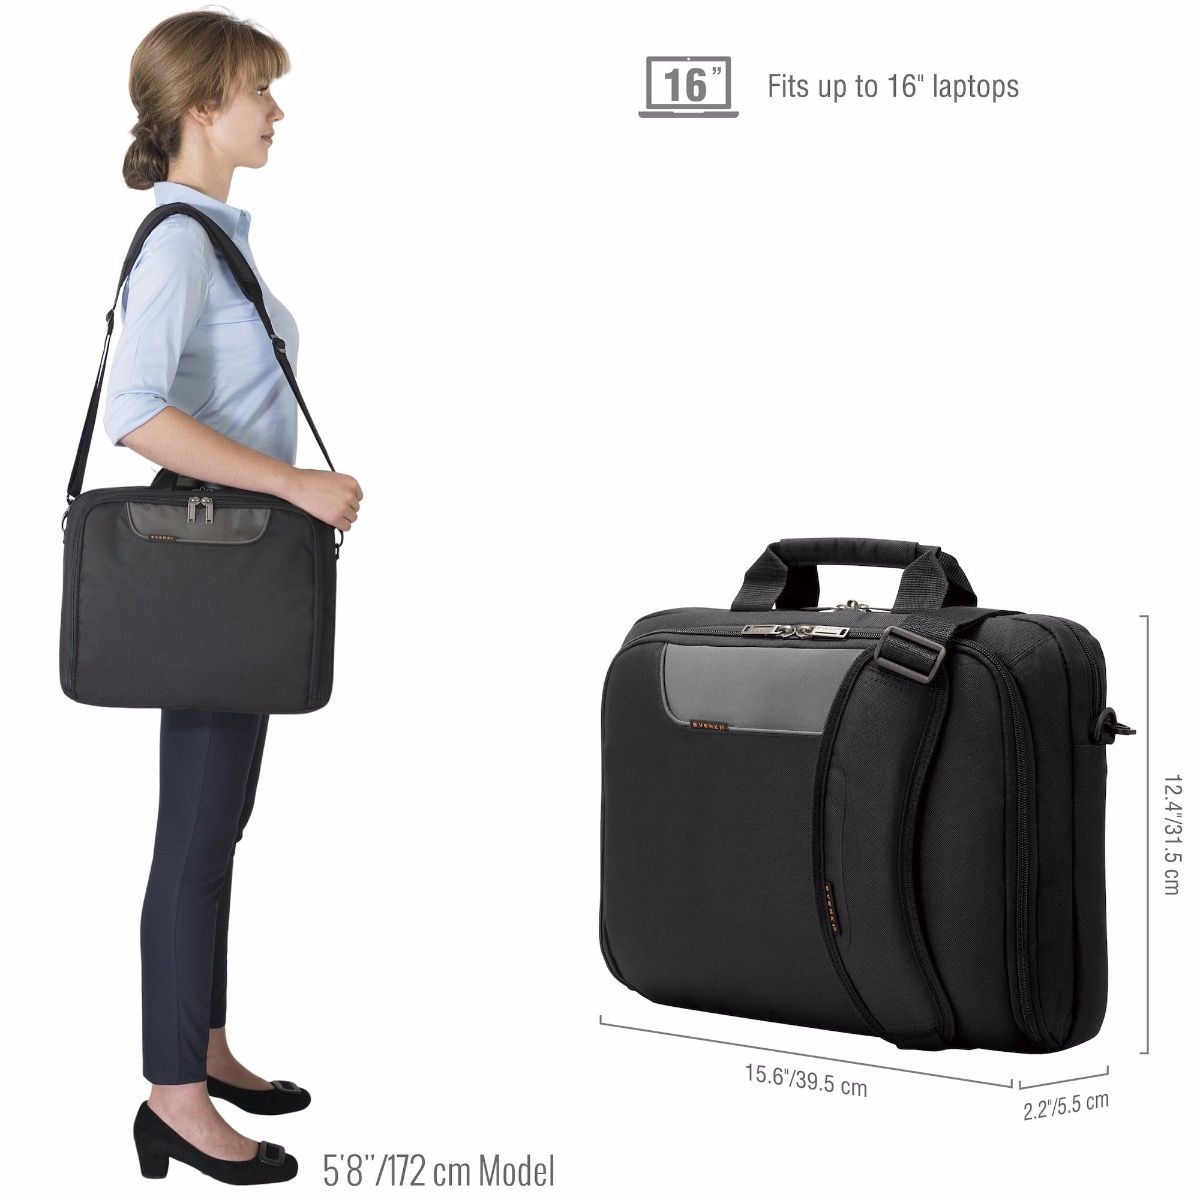 Notebooktasche Polyester schwarz Laptoptasche Trolleyschlaufe OTD218S New Bags 